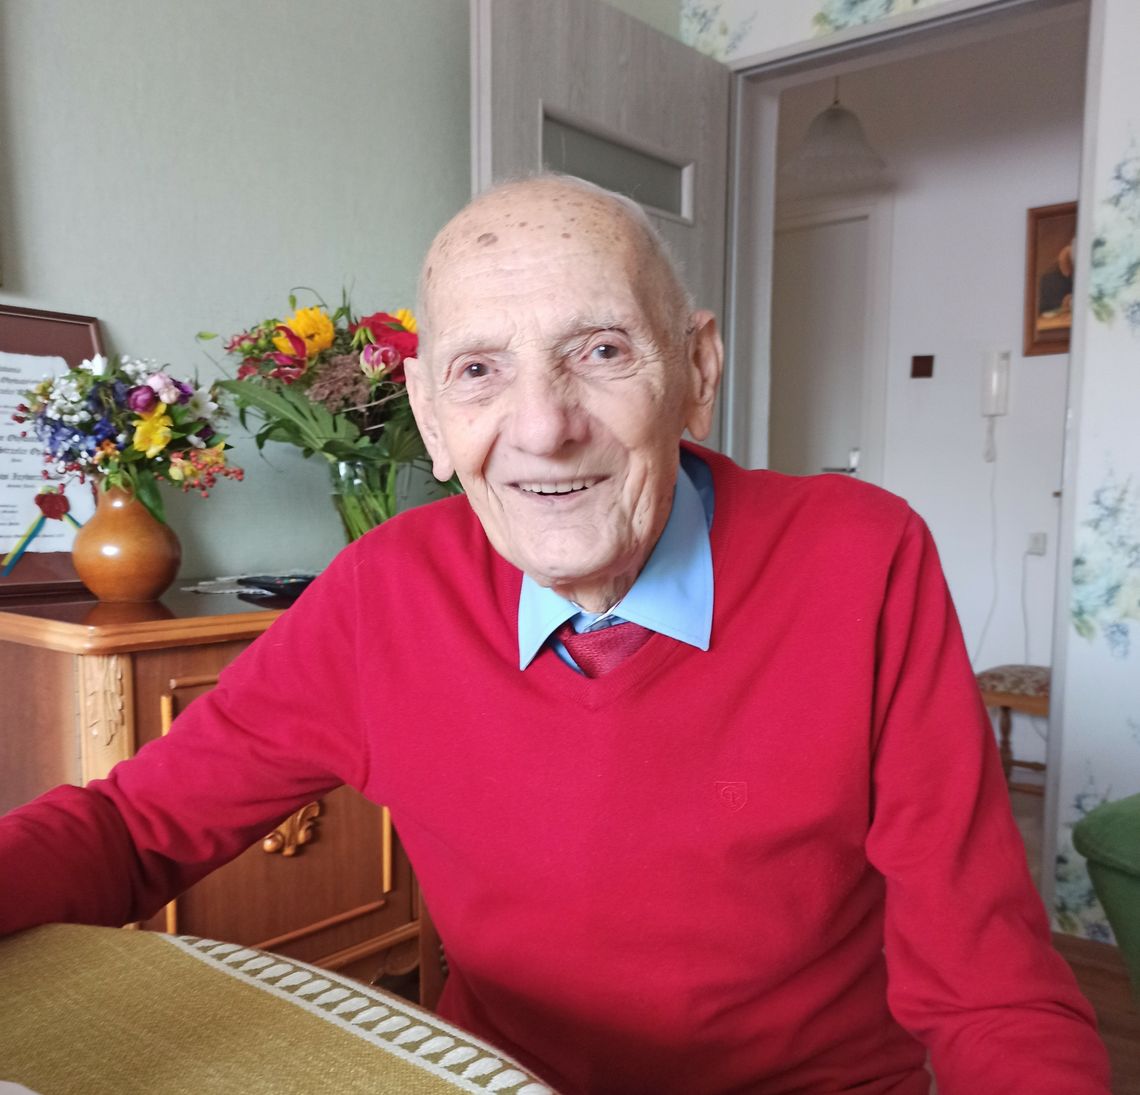 Józef Izydorczyk, cukiernik ze Strzelec Opolskich, obchodzi 95. urodziny